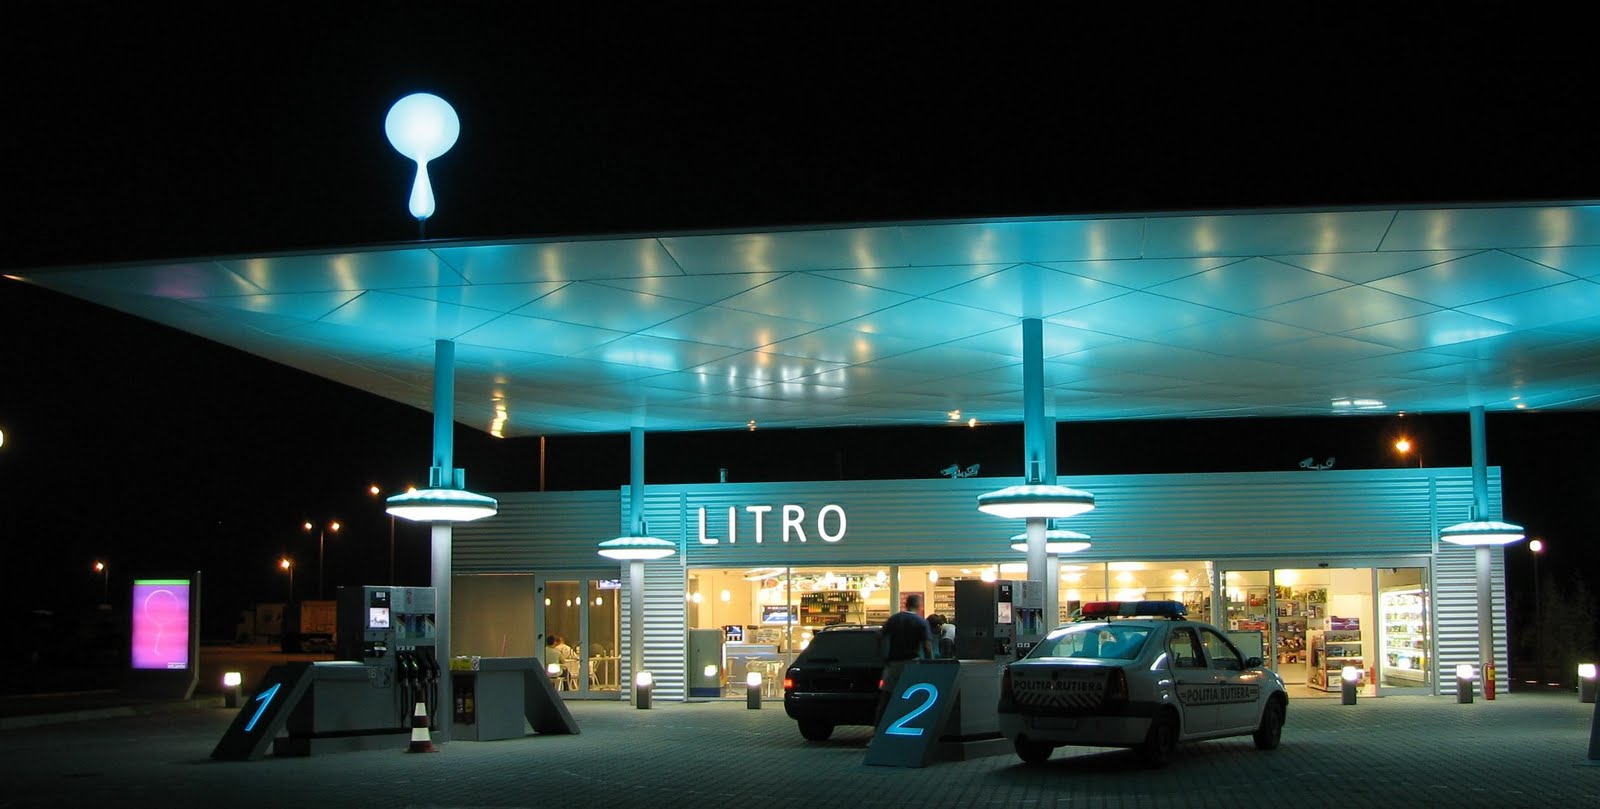 Litro - A1